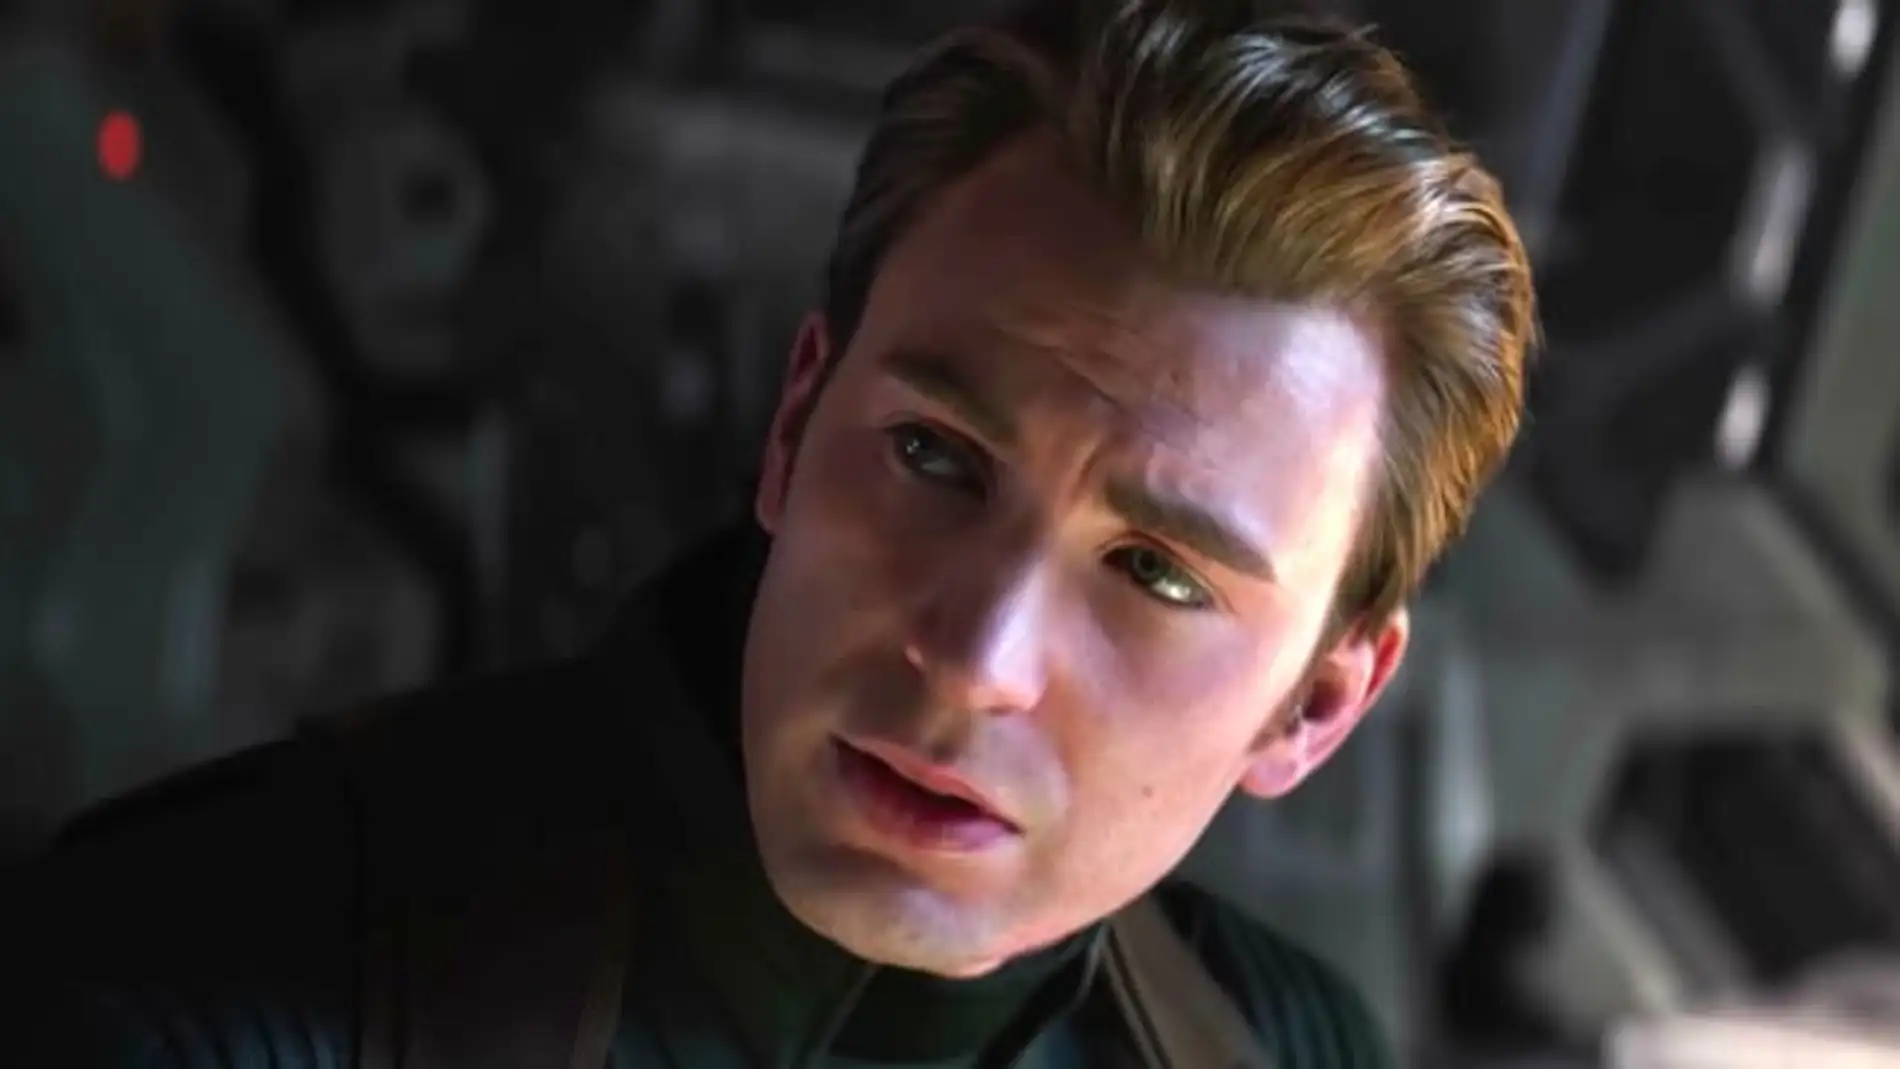 Capitán América en 'Vengadores: Endgame'